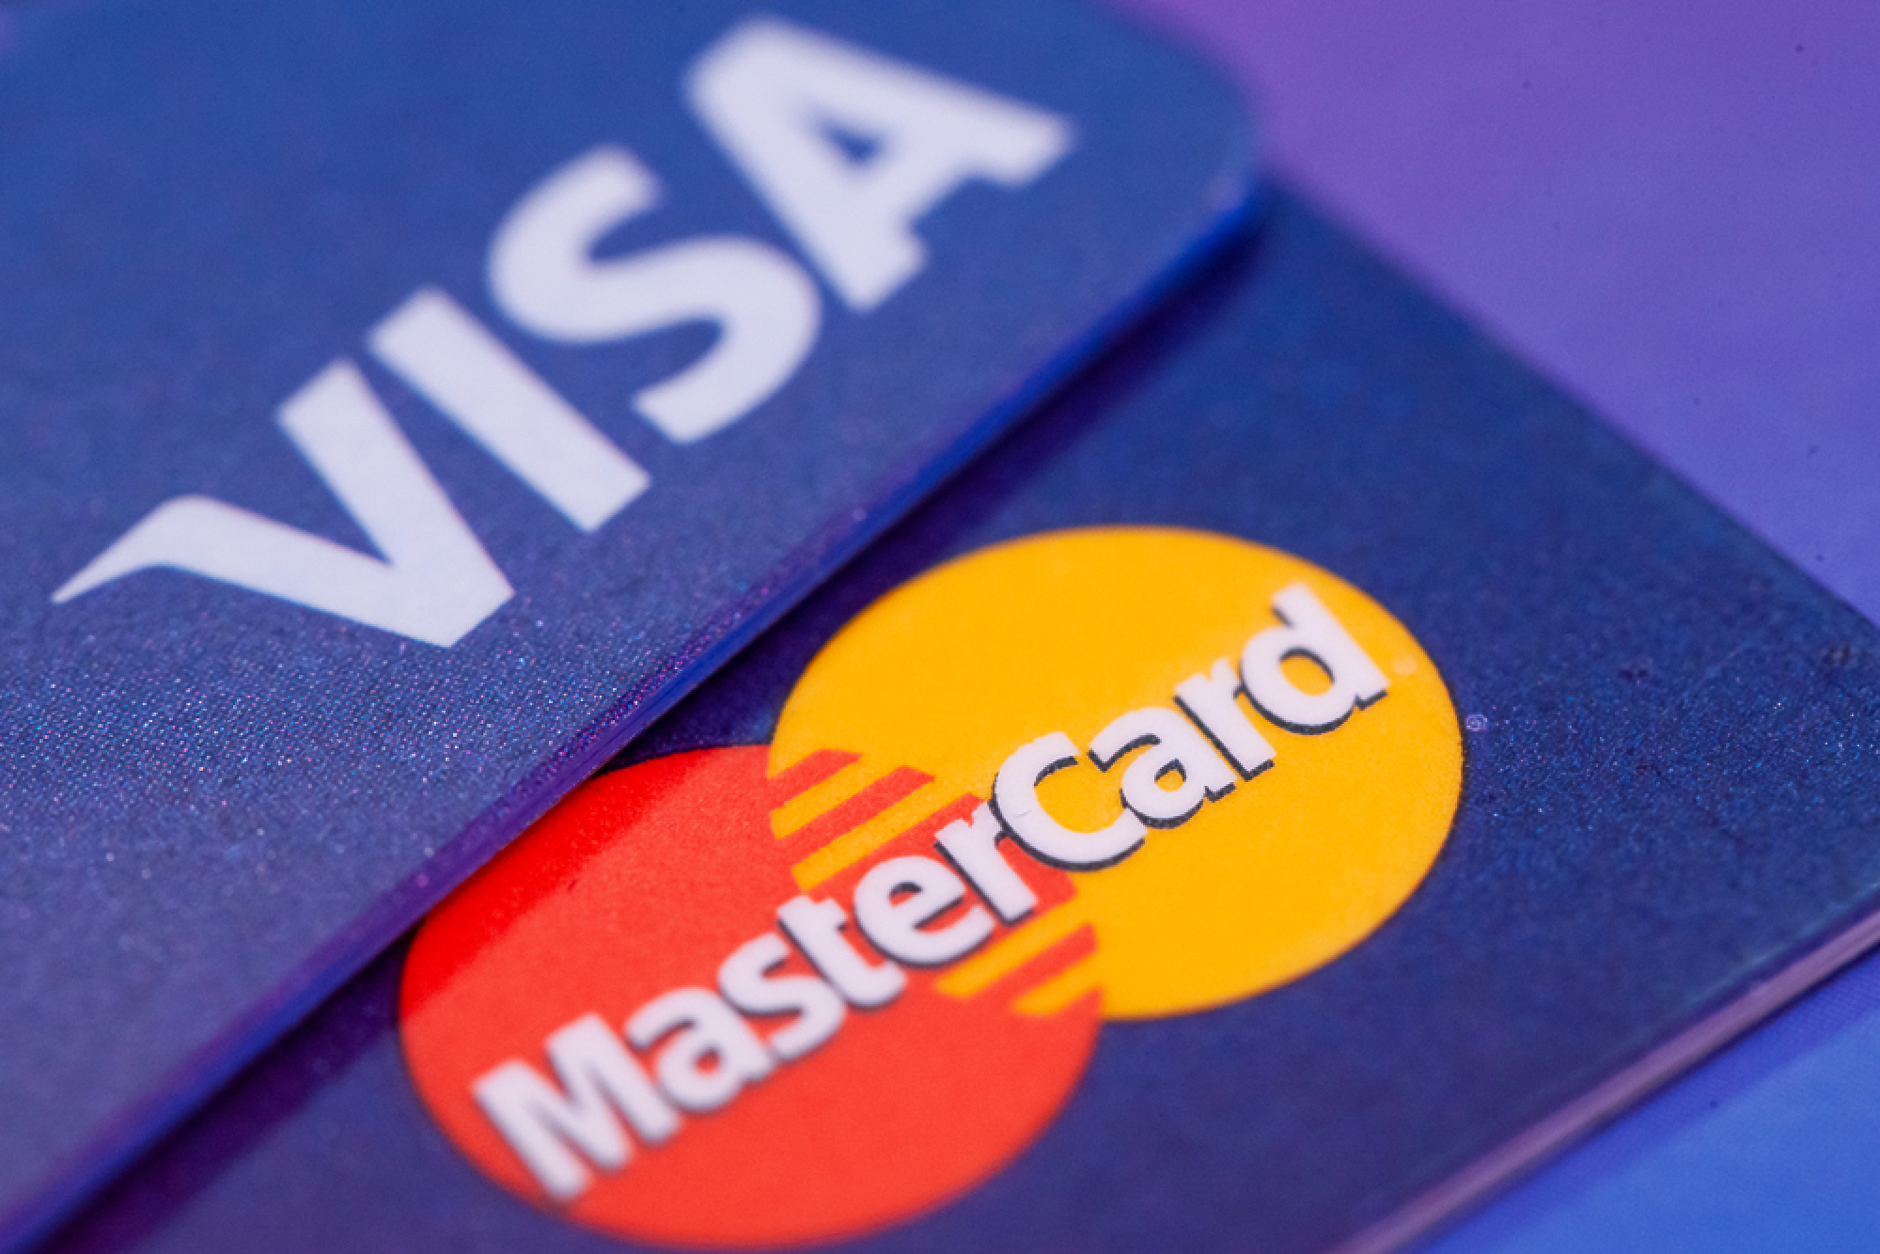 Visa и Mastercard отлагат навлизането на крипто пазара